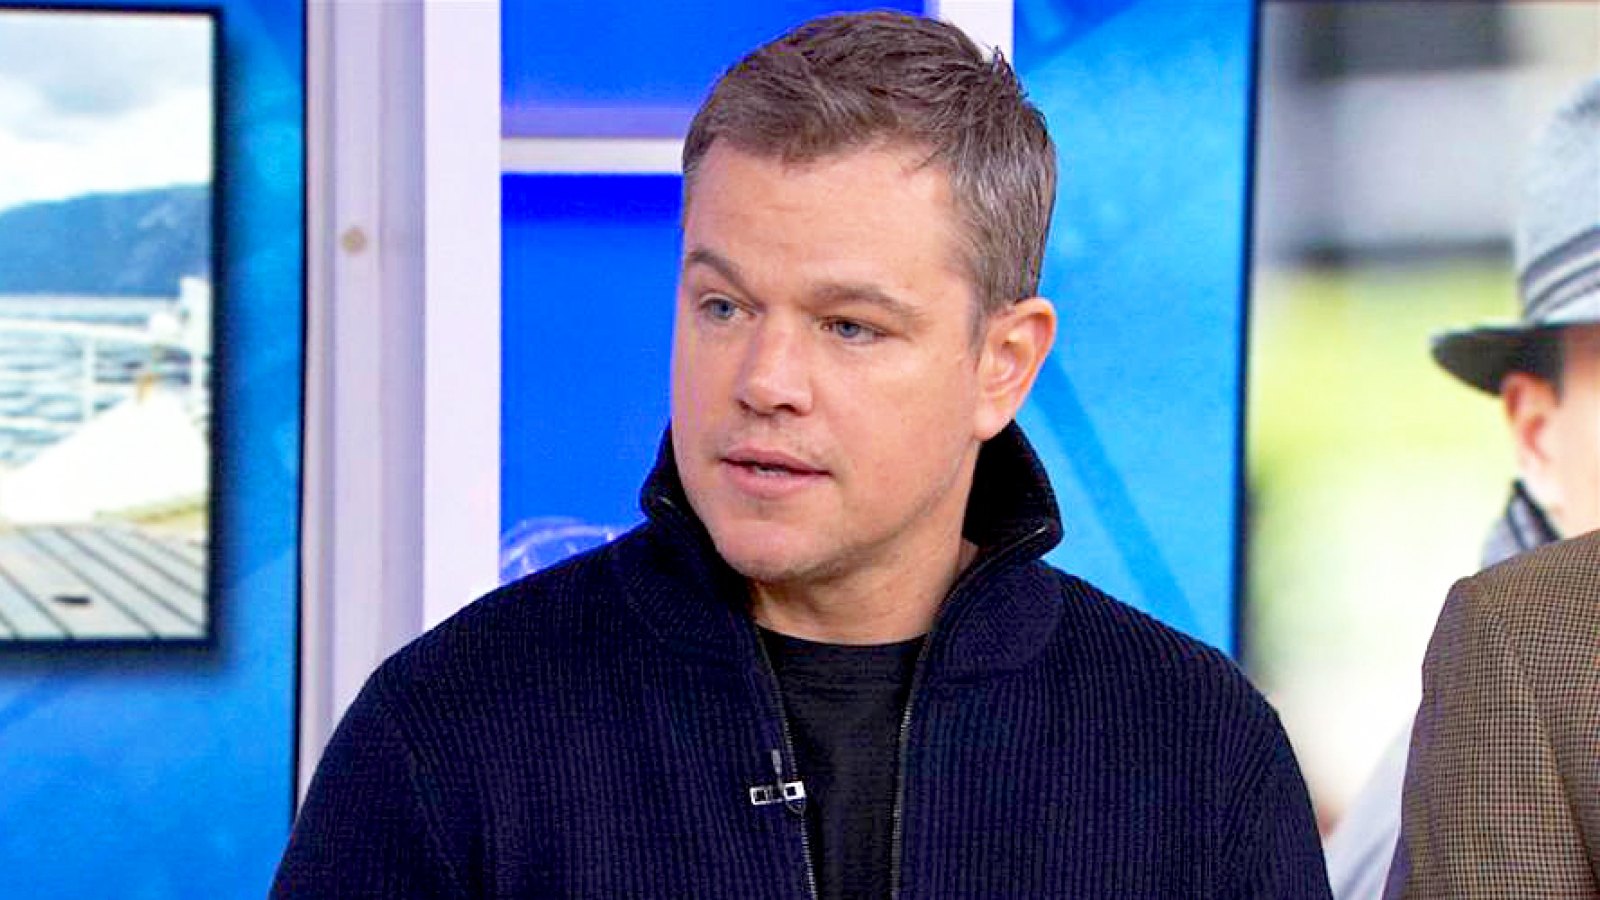 Matt Damon on ‘Today‘ Show